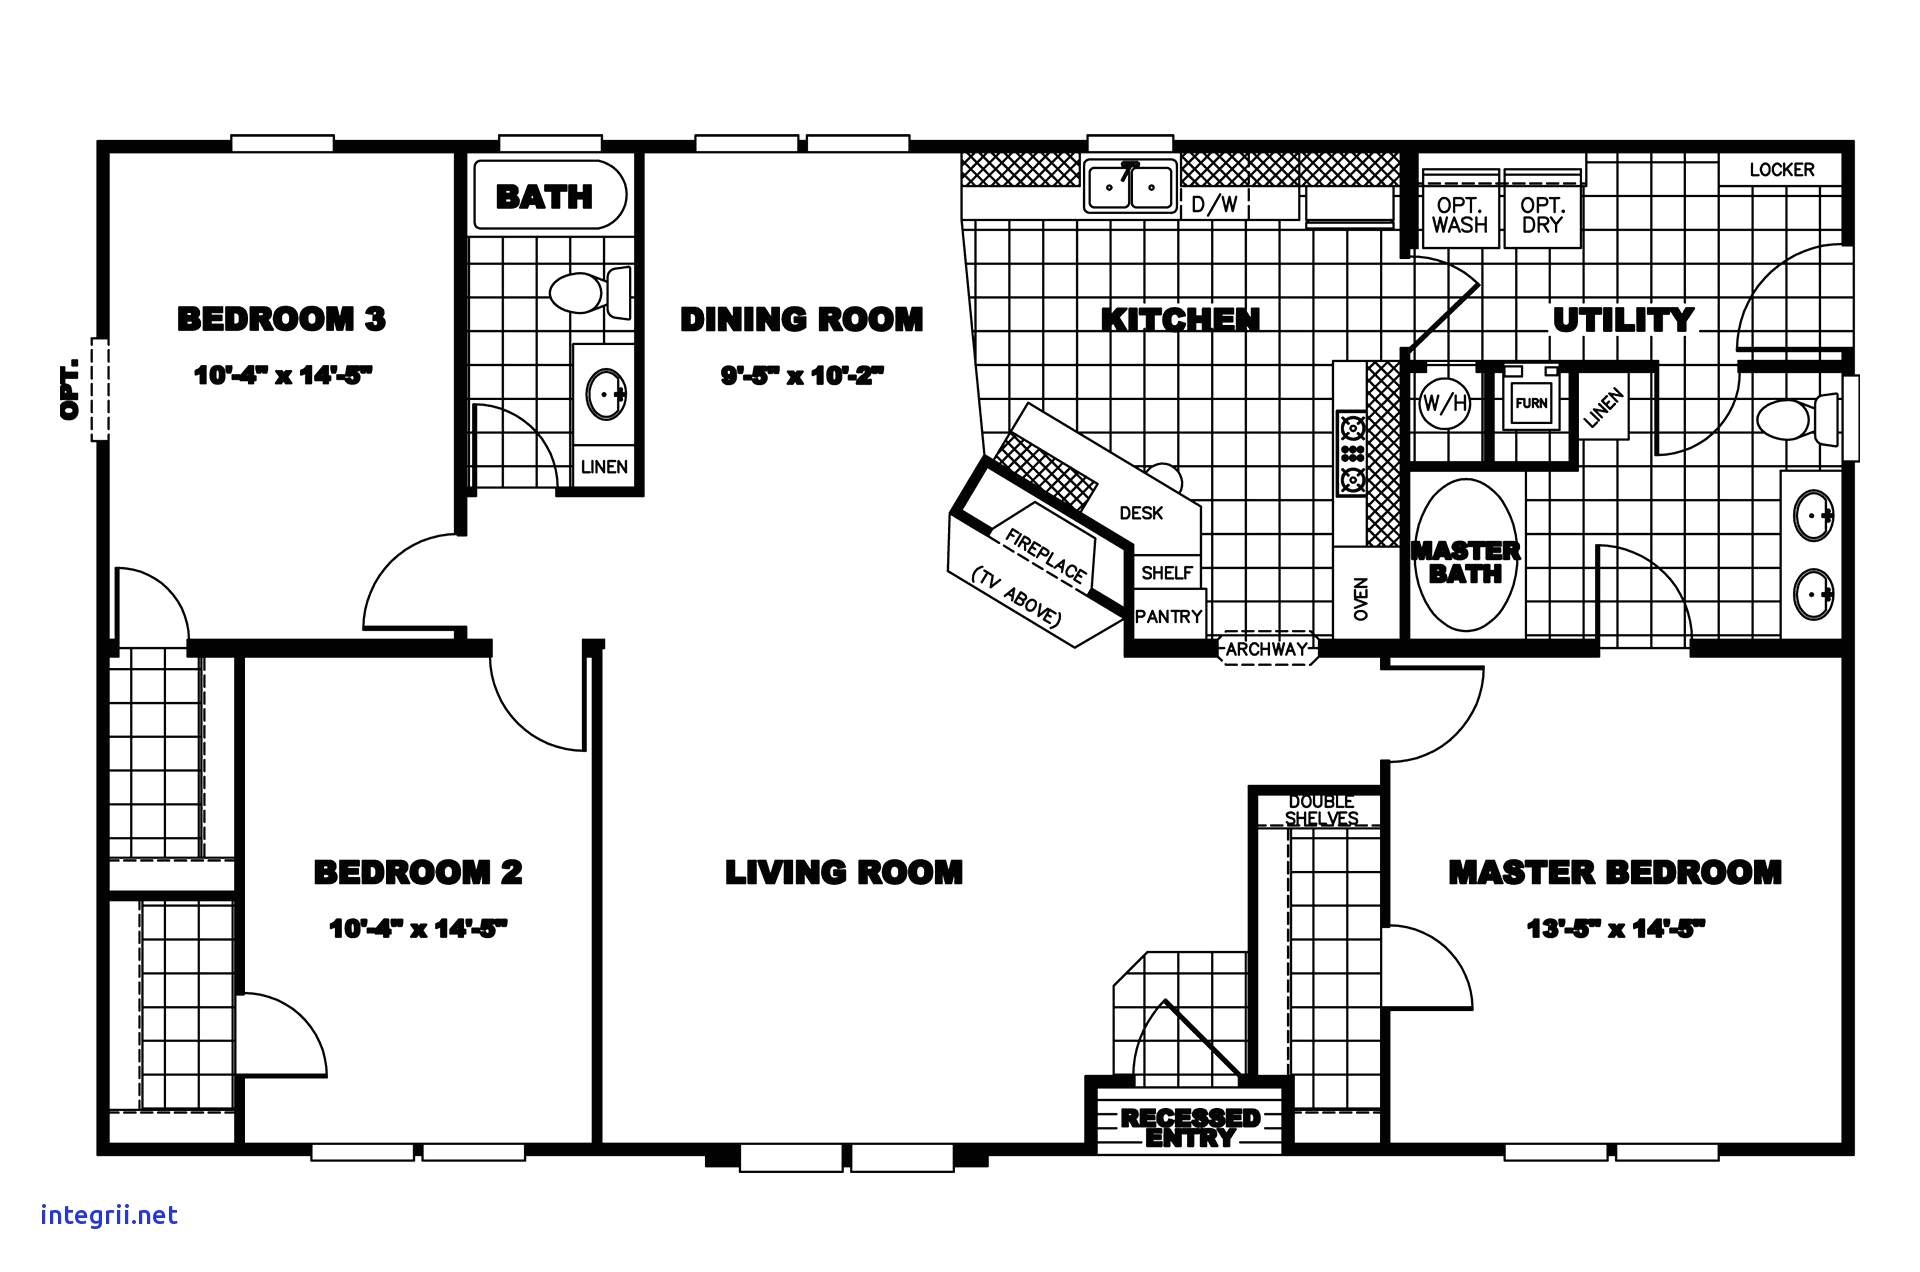 24 x 36 home plans best of 5 bedroom mobile home floor plans floor plan best index wiki 0 0d